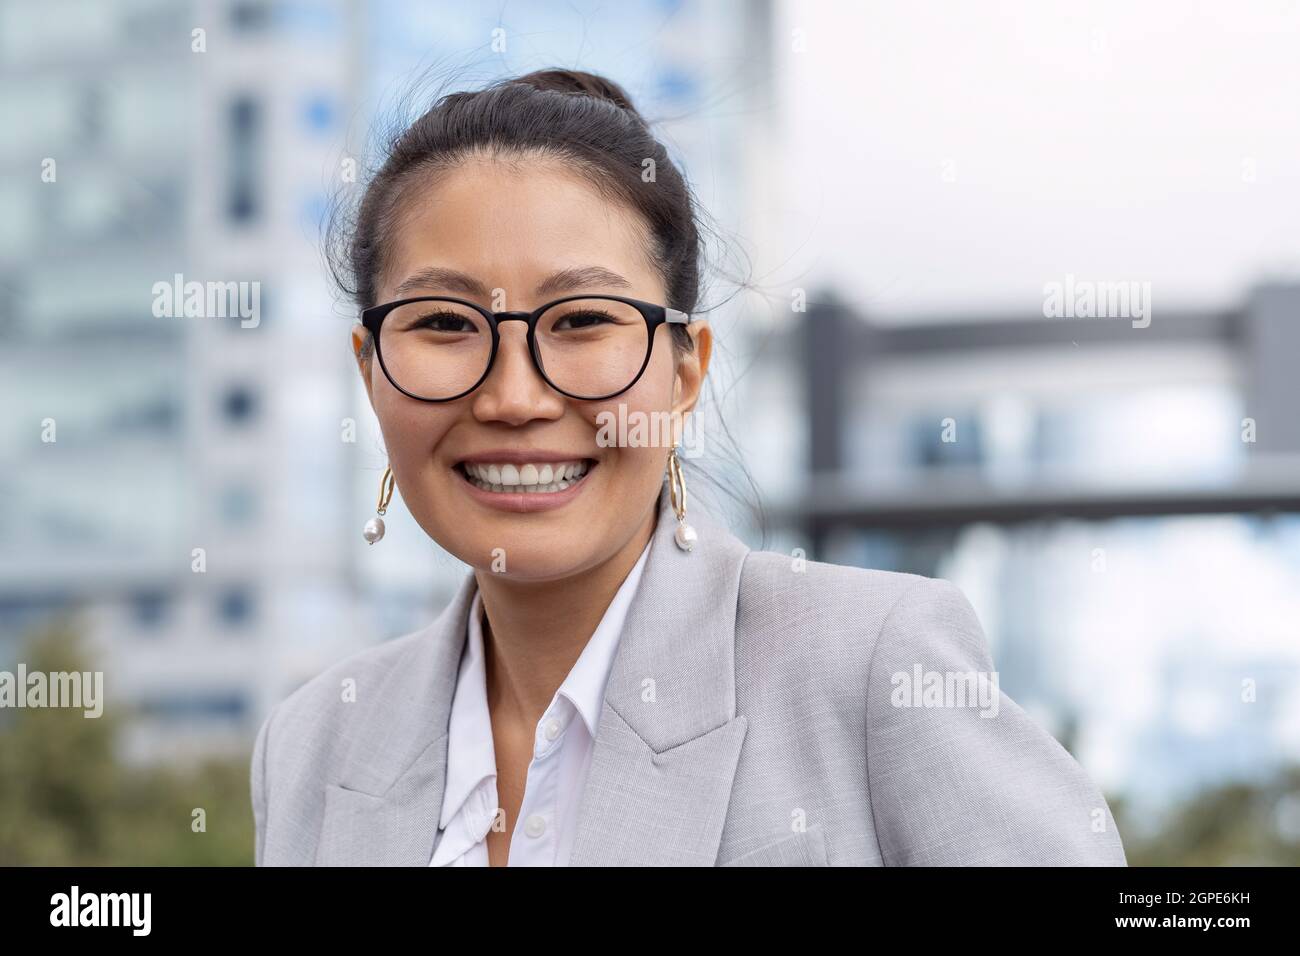 Jeune femme d'affaires gaie en lunettes de vue et costume gris vous regardant avec un sourire enjoué Banque D'Images